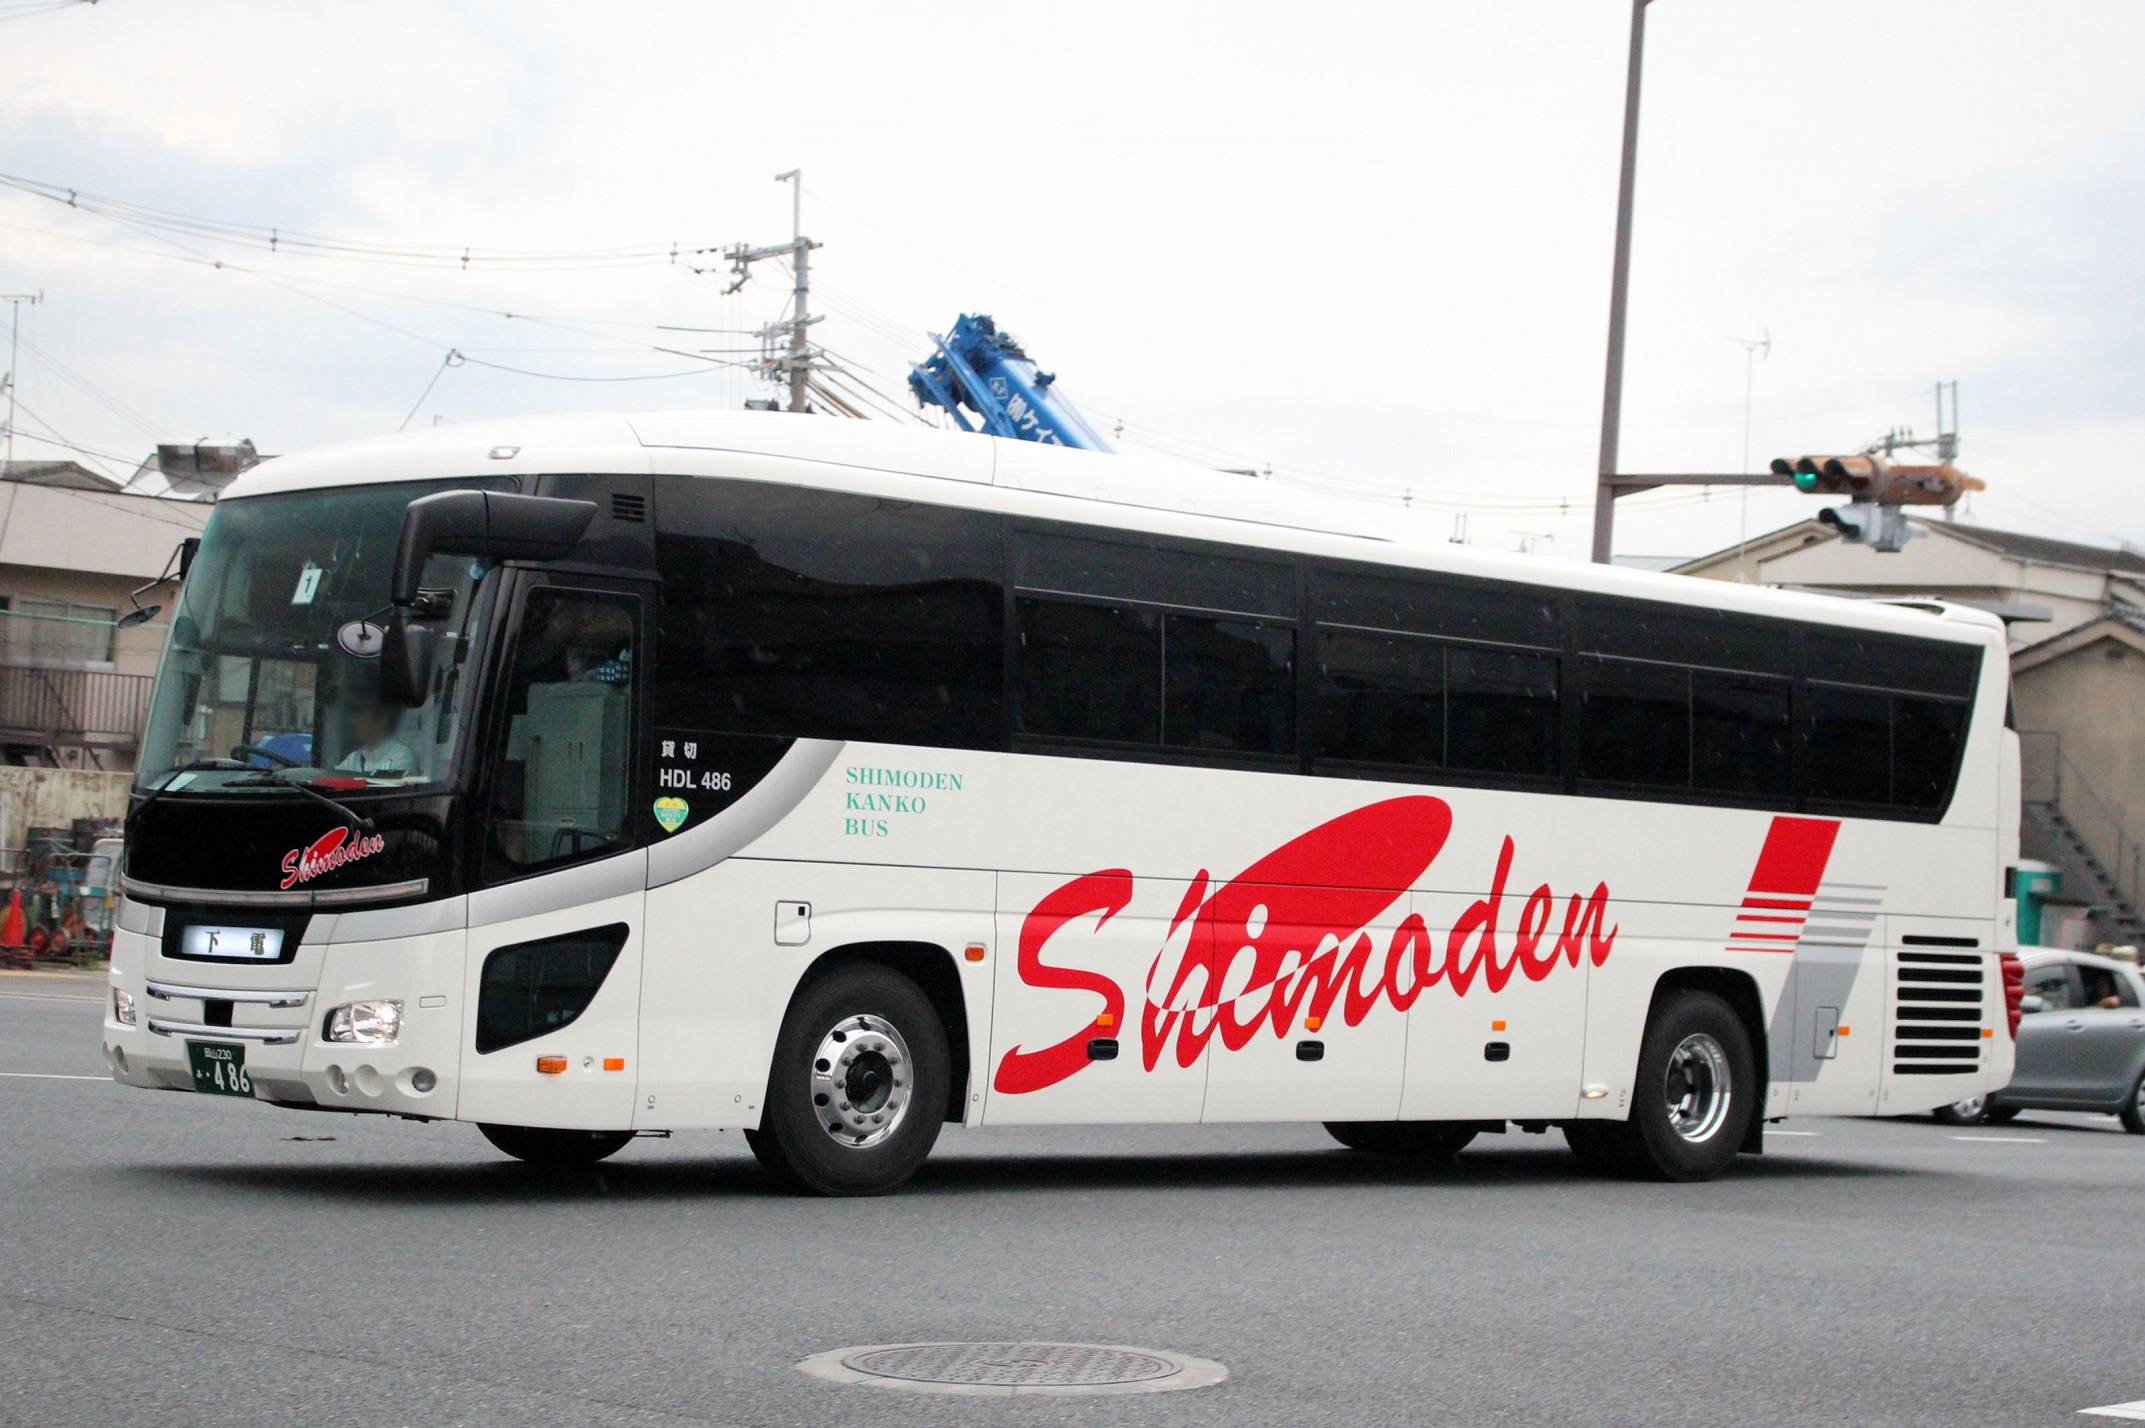 下電観光バス HDL486